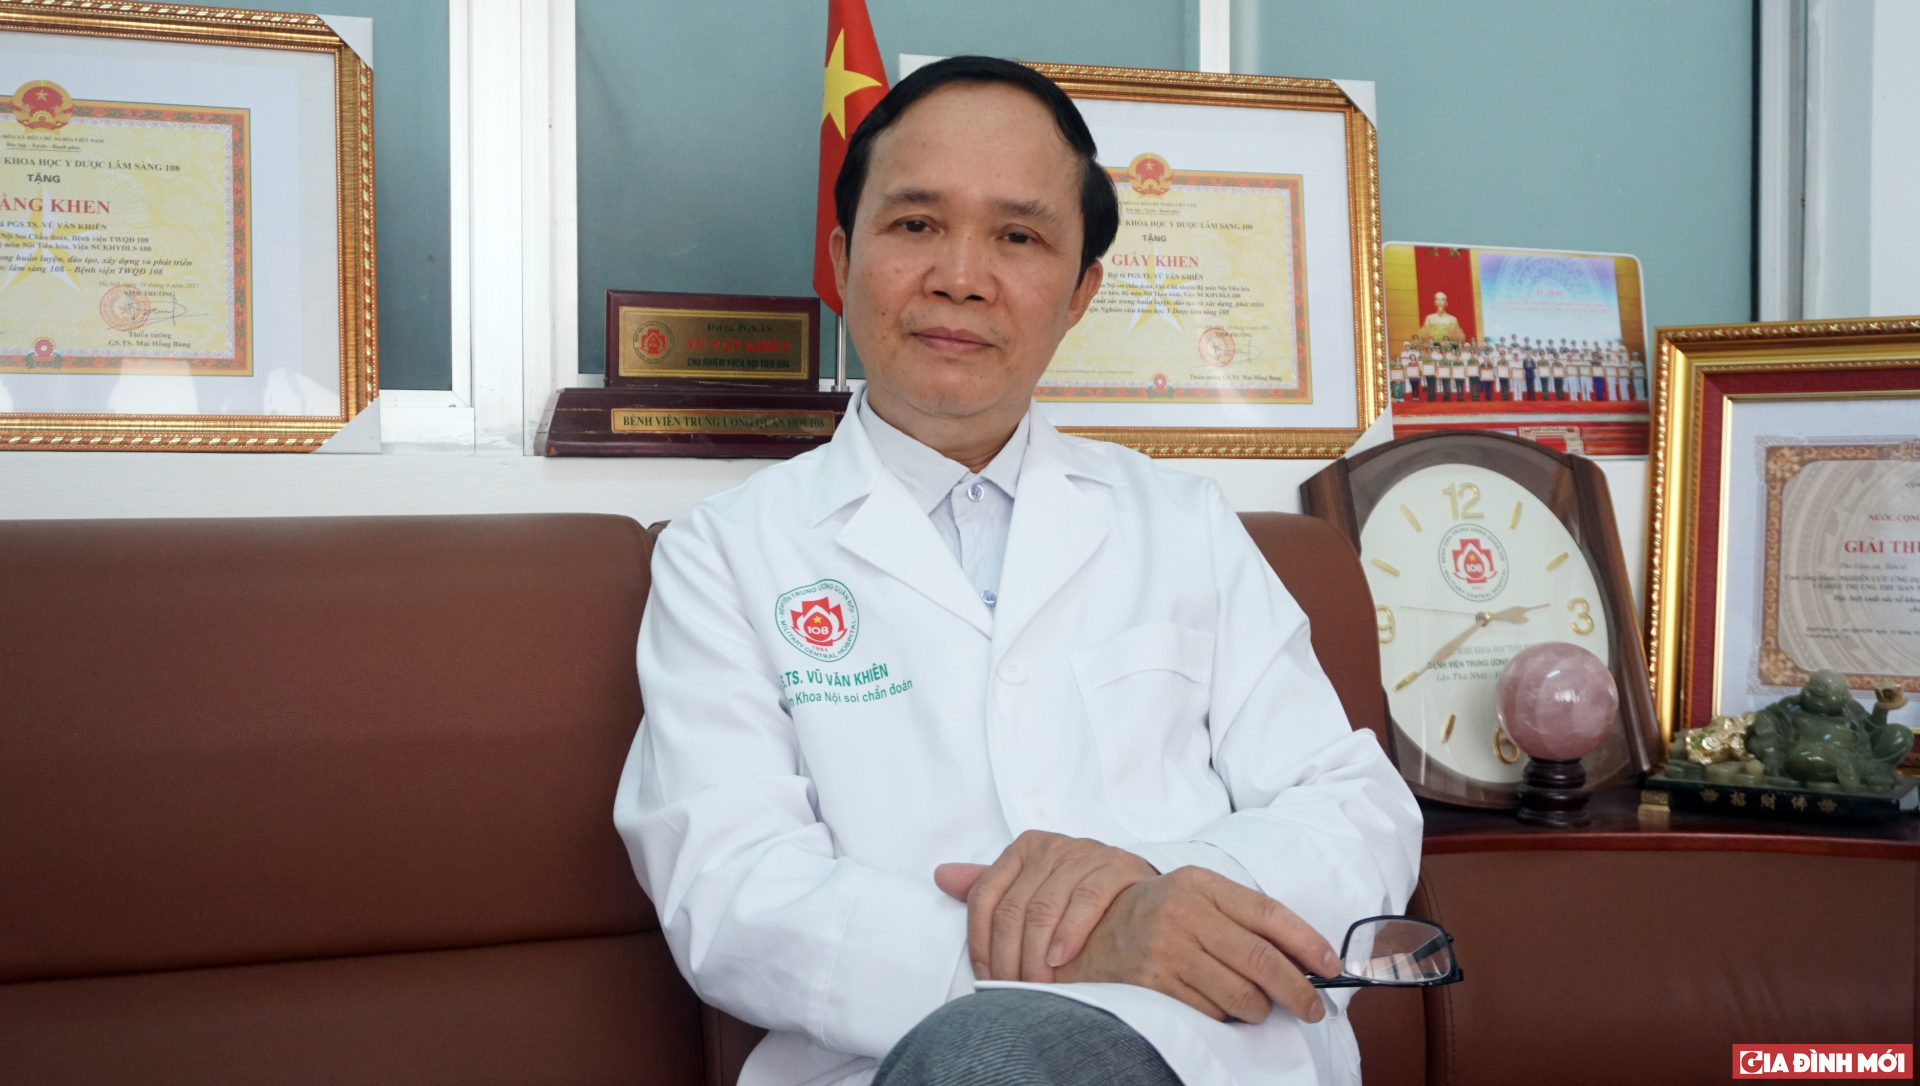 Bác sĩ Vũ Văn Khiên trao đổi về những vướng mắc thường gặp trong chẩn đoán và điều trị chứng ruột kích thích - Ảnh: Hoàng Hiệp